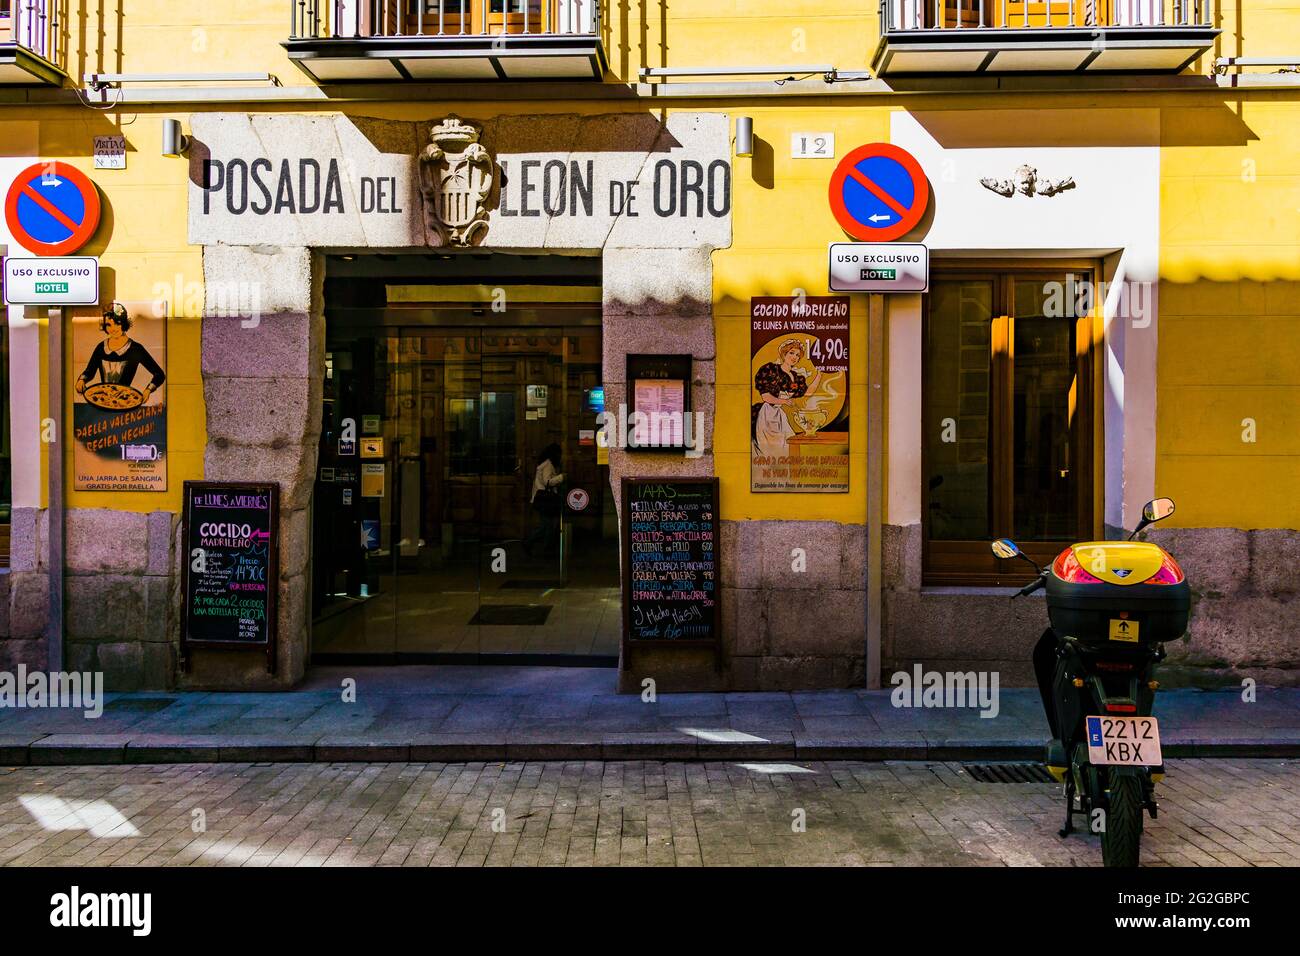 Traditionelle Taverne. Posada del León de Oro, Calle de la Cava Baja. Madrid hat eine wichtige gastronomische Tradition. Viele Restaurants, die vorbereitet wurden Stockfoto